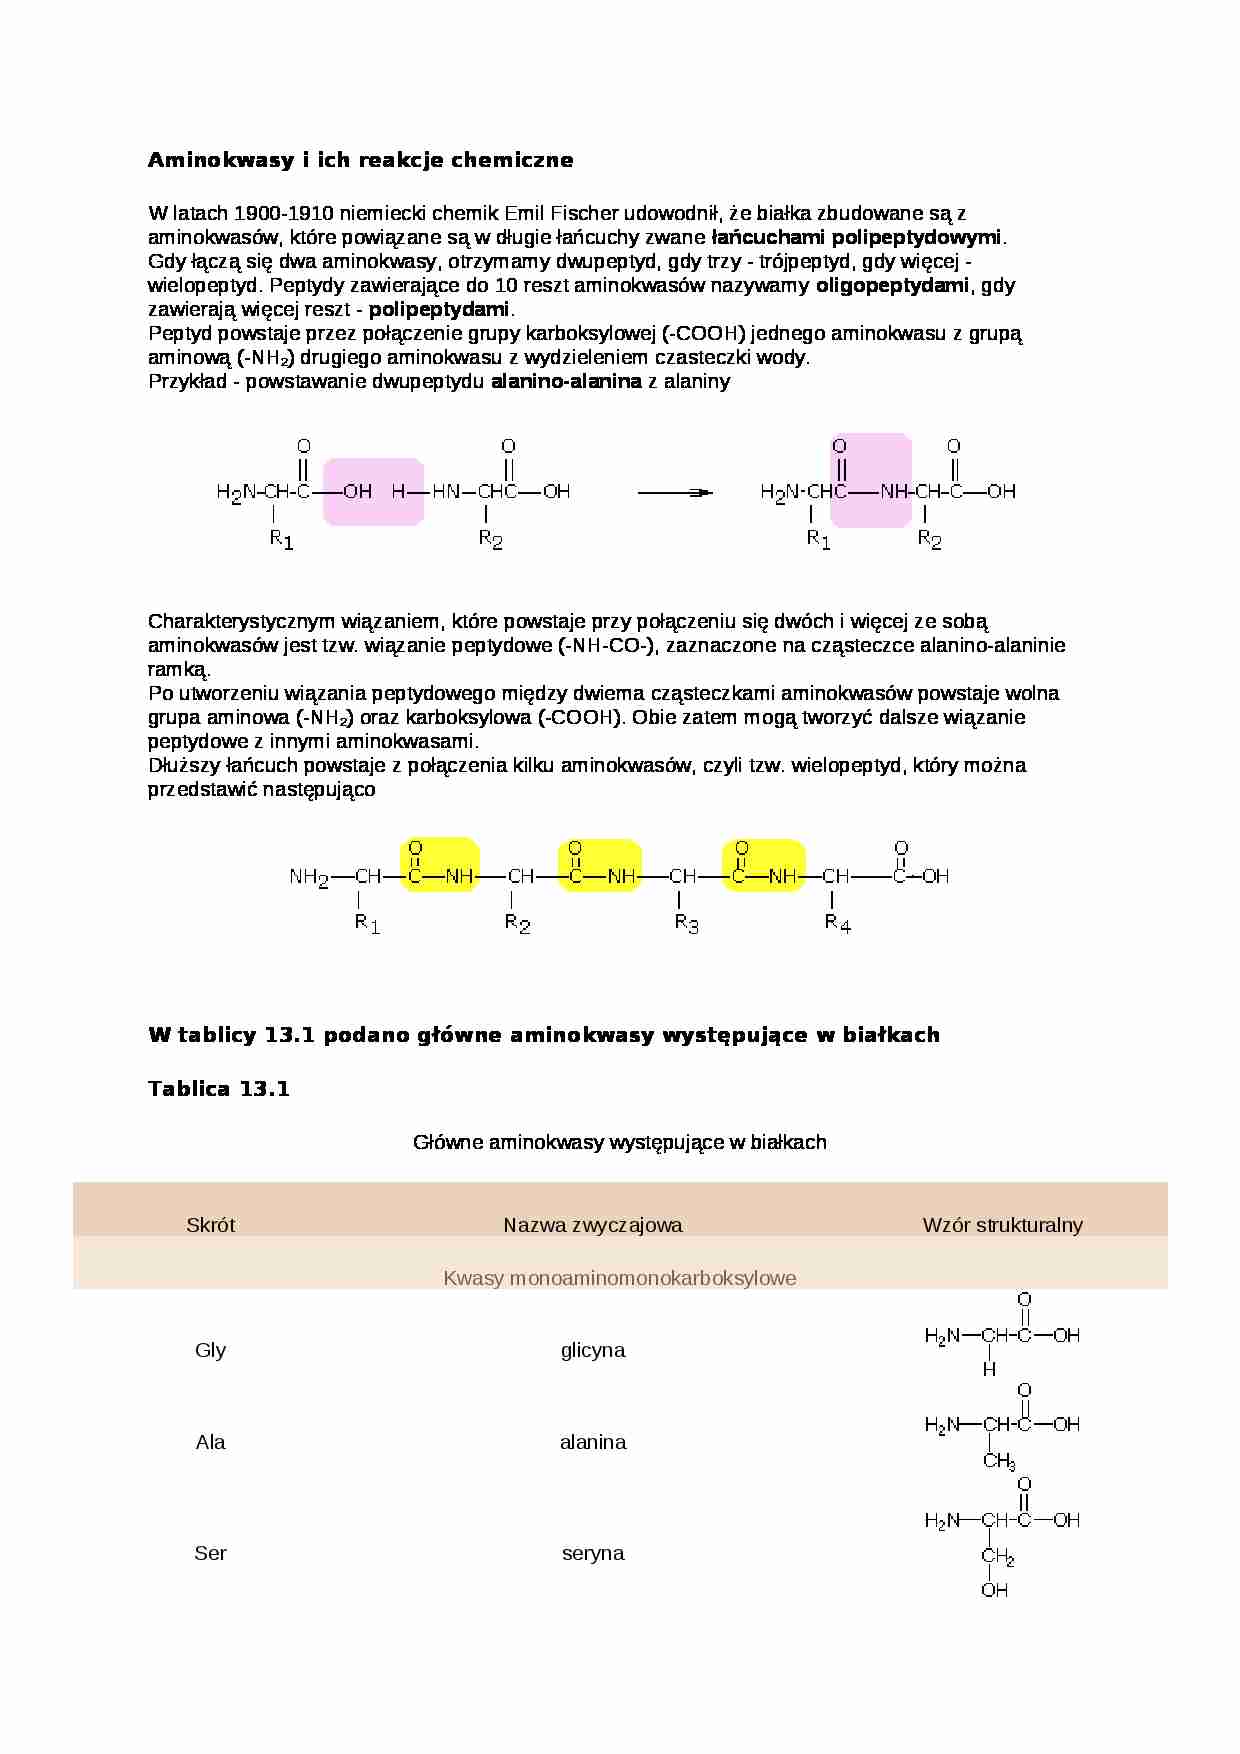 Aminokwasy i ich reakcje chemiczne- prezentacja - strona 1